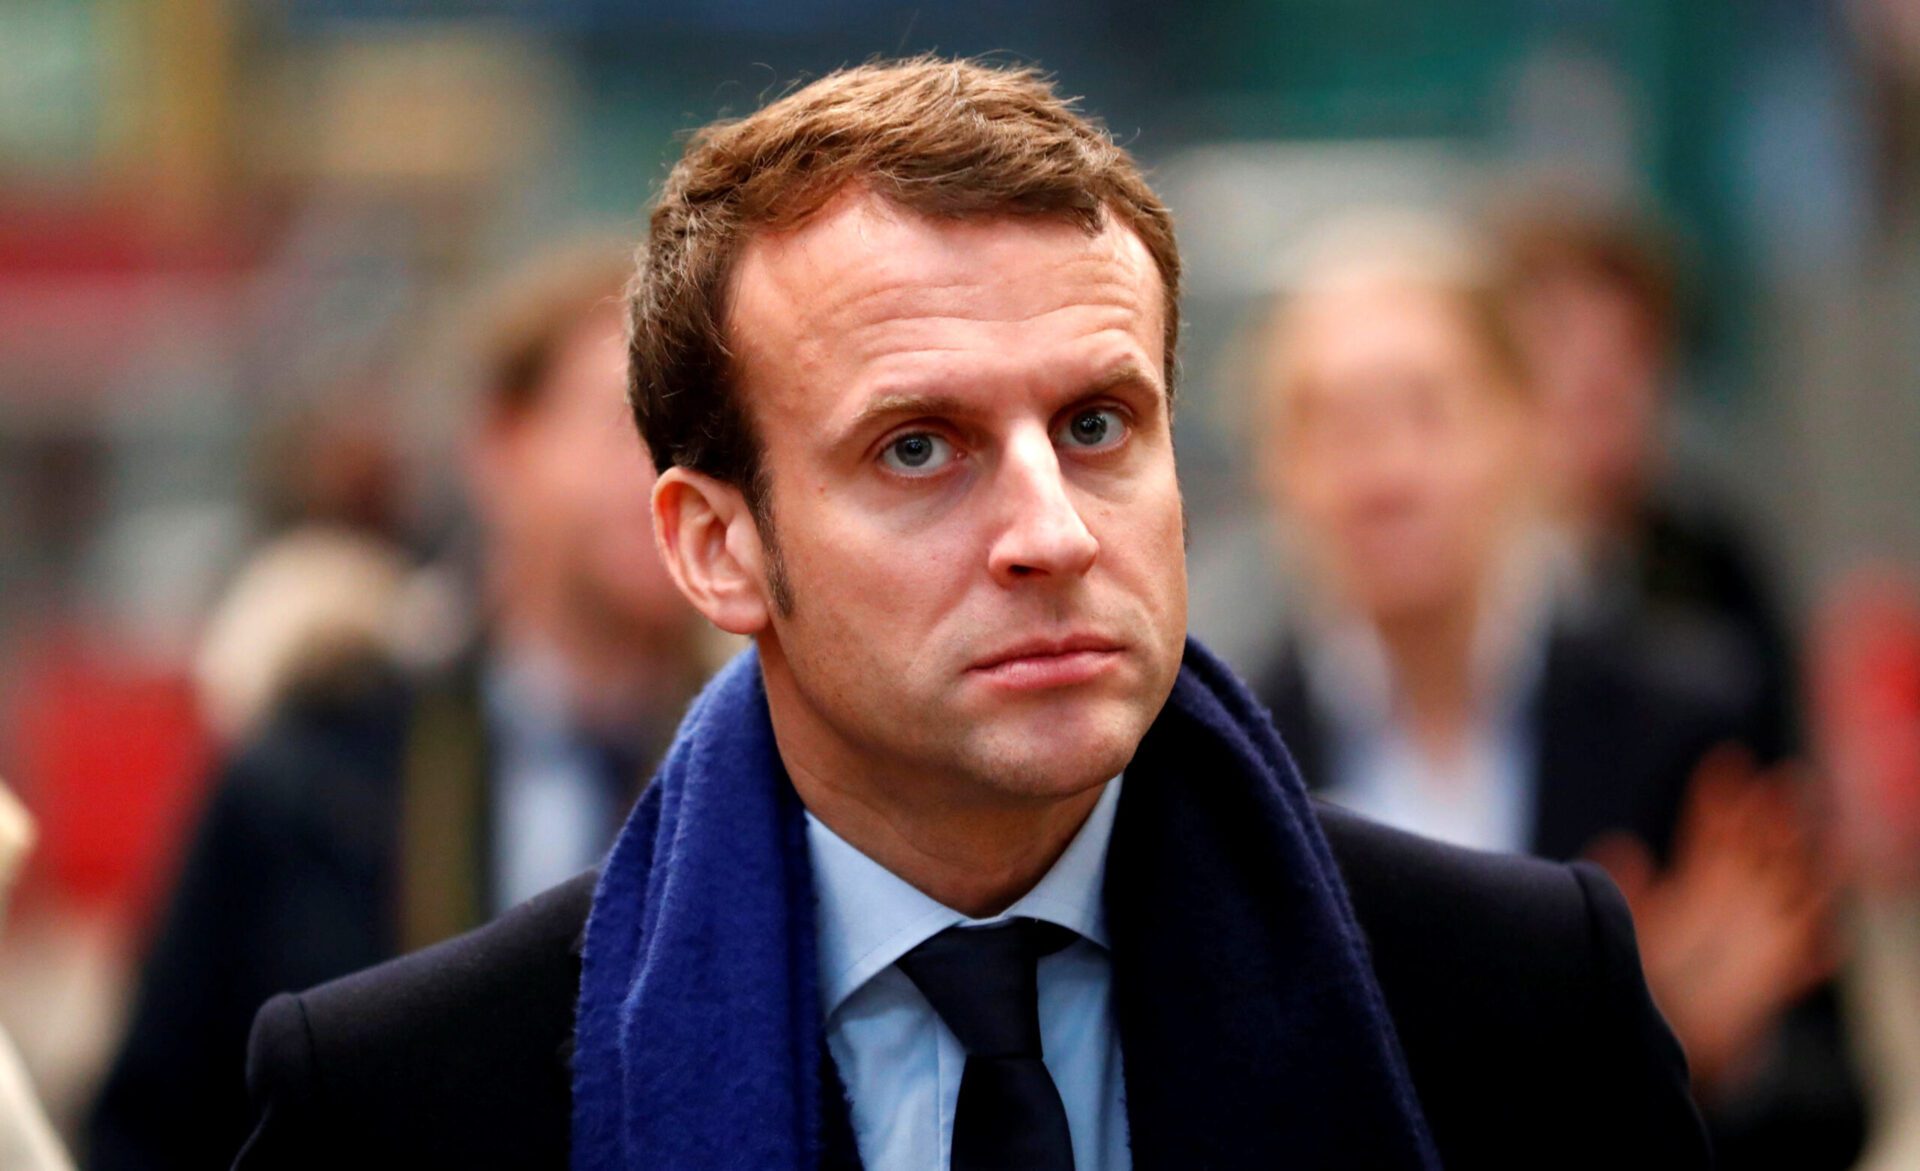 المعارضة الفرنسية تنتقد الخطاب “الترقيعي” لإيمانويل ماكرون